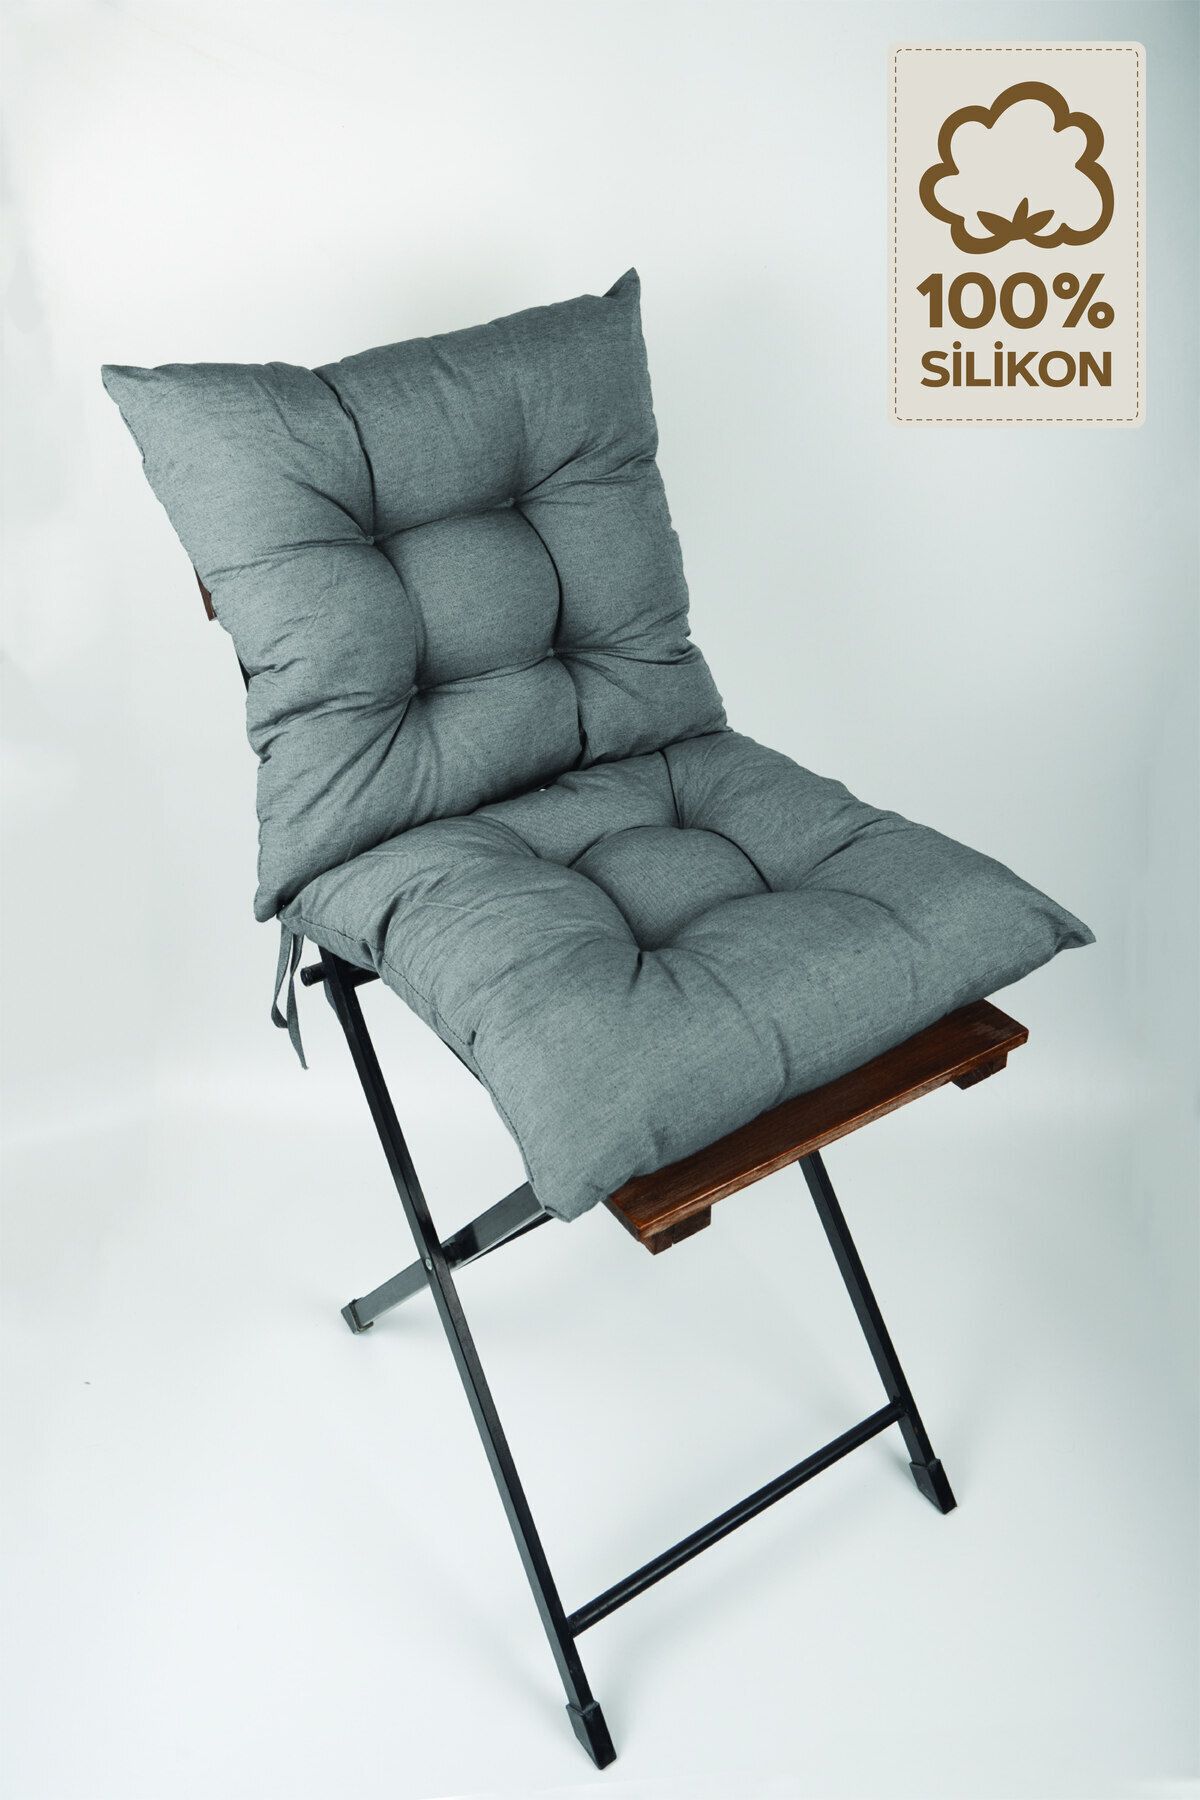 ElginHomeCollection 2'li Dekoratif Pofidik Sandalye Minderi Bağcıklı Gri 40x40